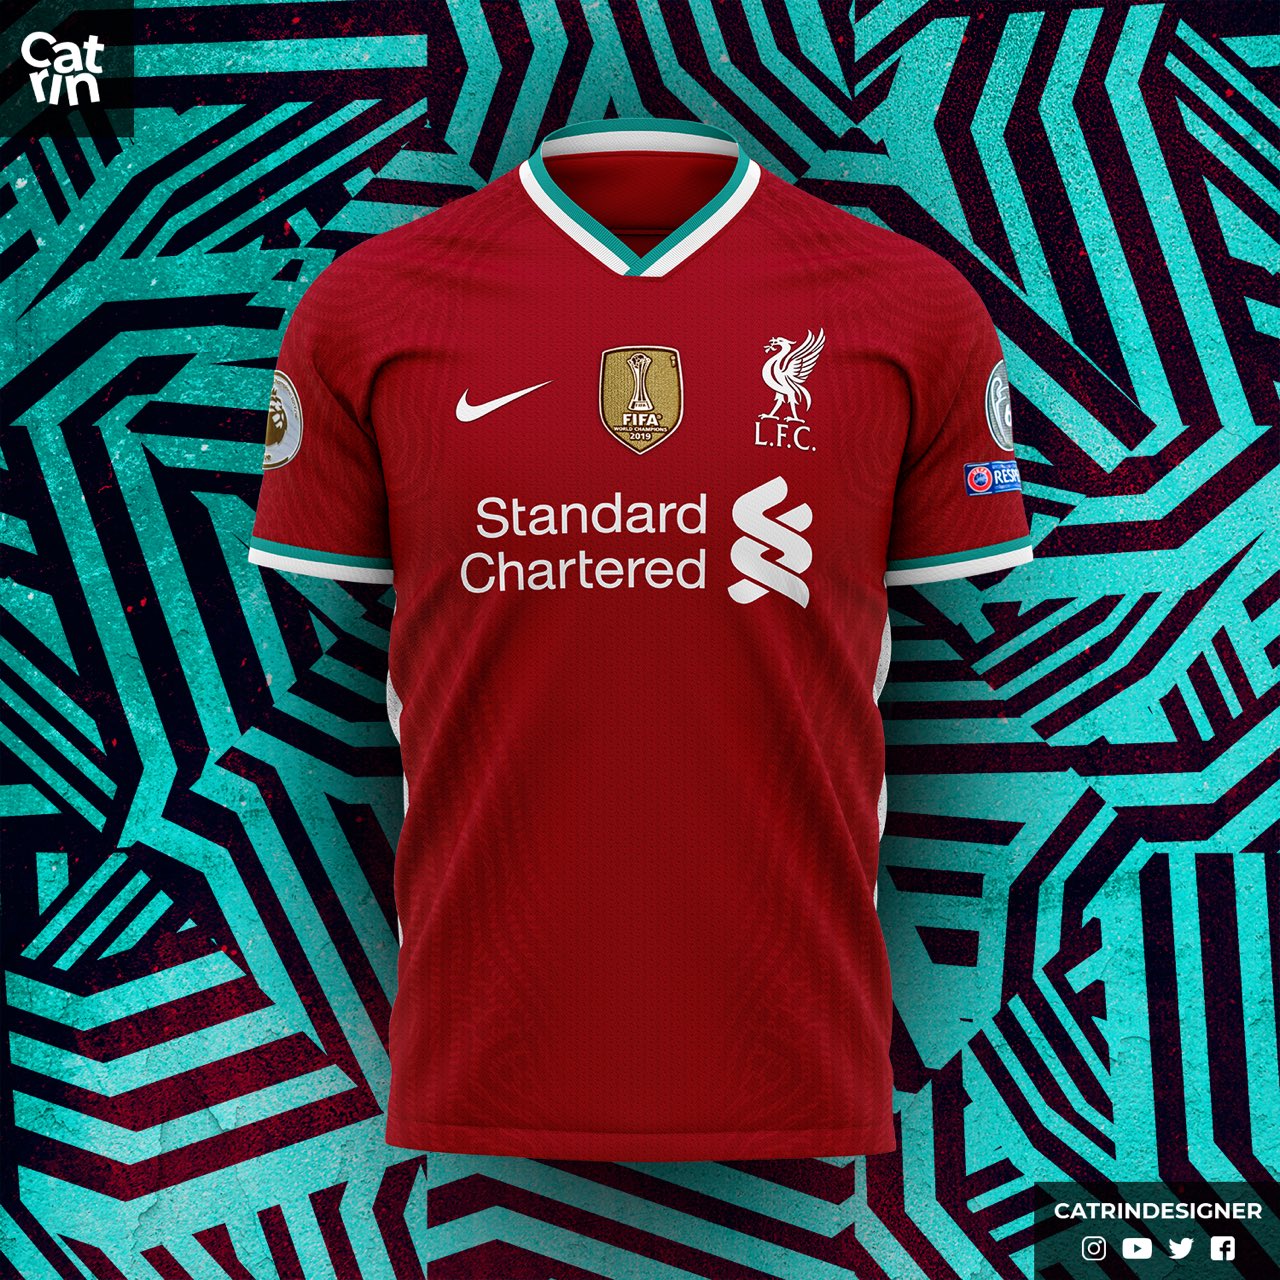 Liverpool FC on Twitter: "El acuerdo entre Liverpool y Nike comenzará a partir del de Agosto, cuya fecha será cuando se oficialmente la nueva camiseta del https://t.co/E35mmBpLfp" / Twitter